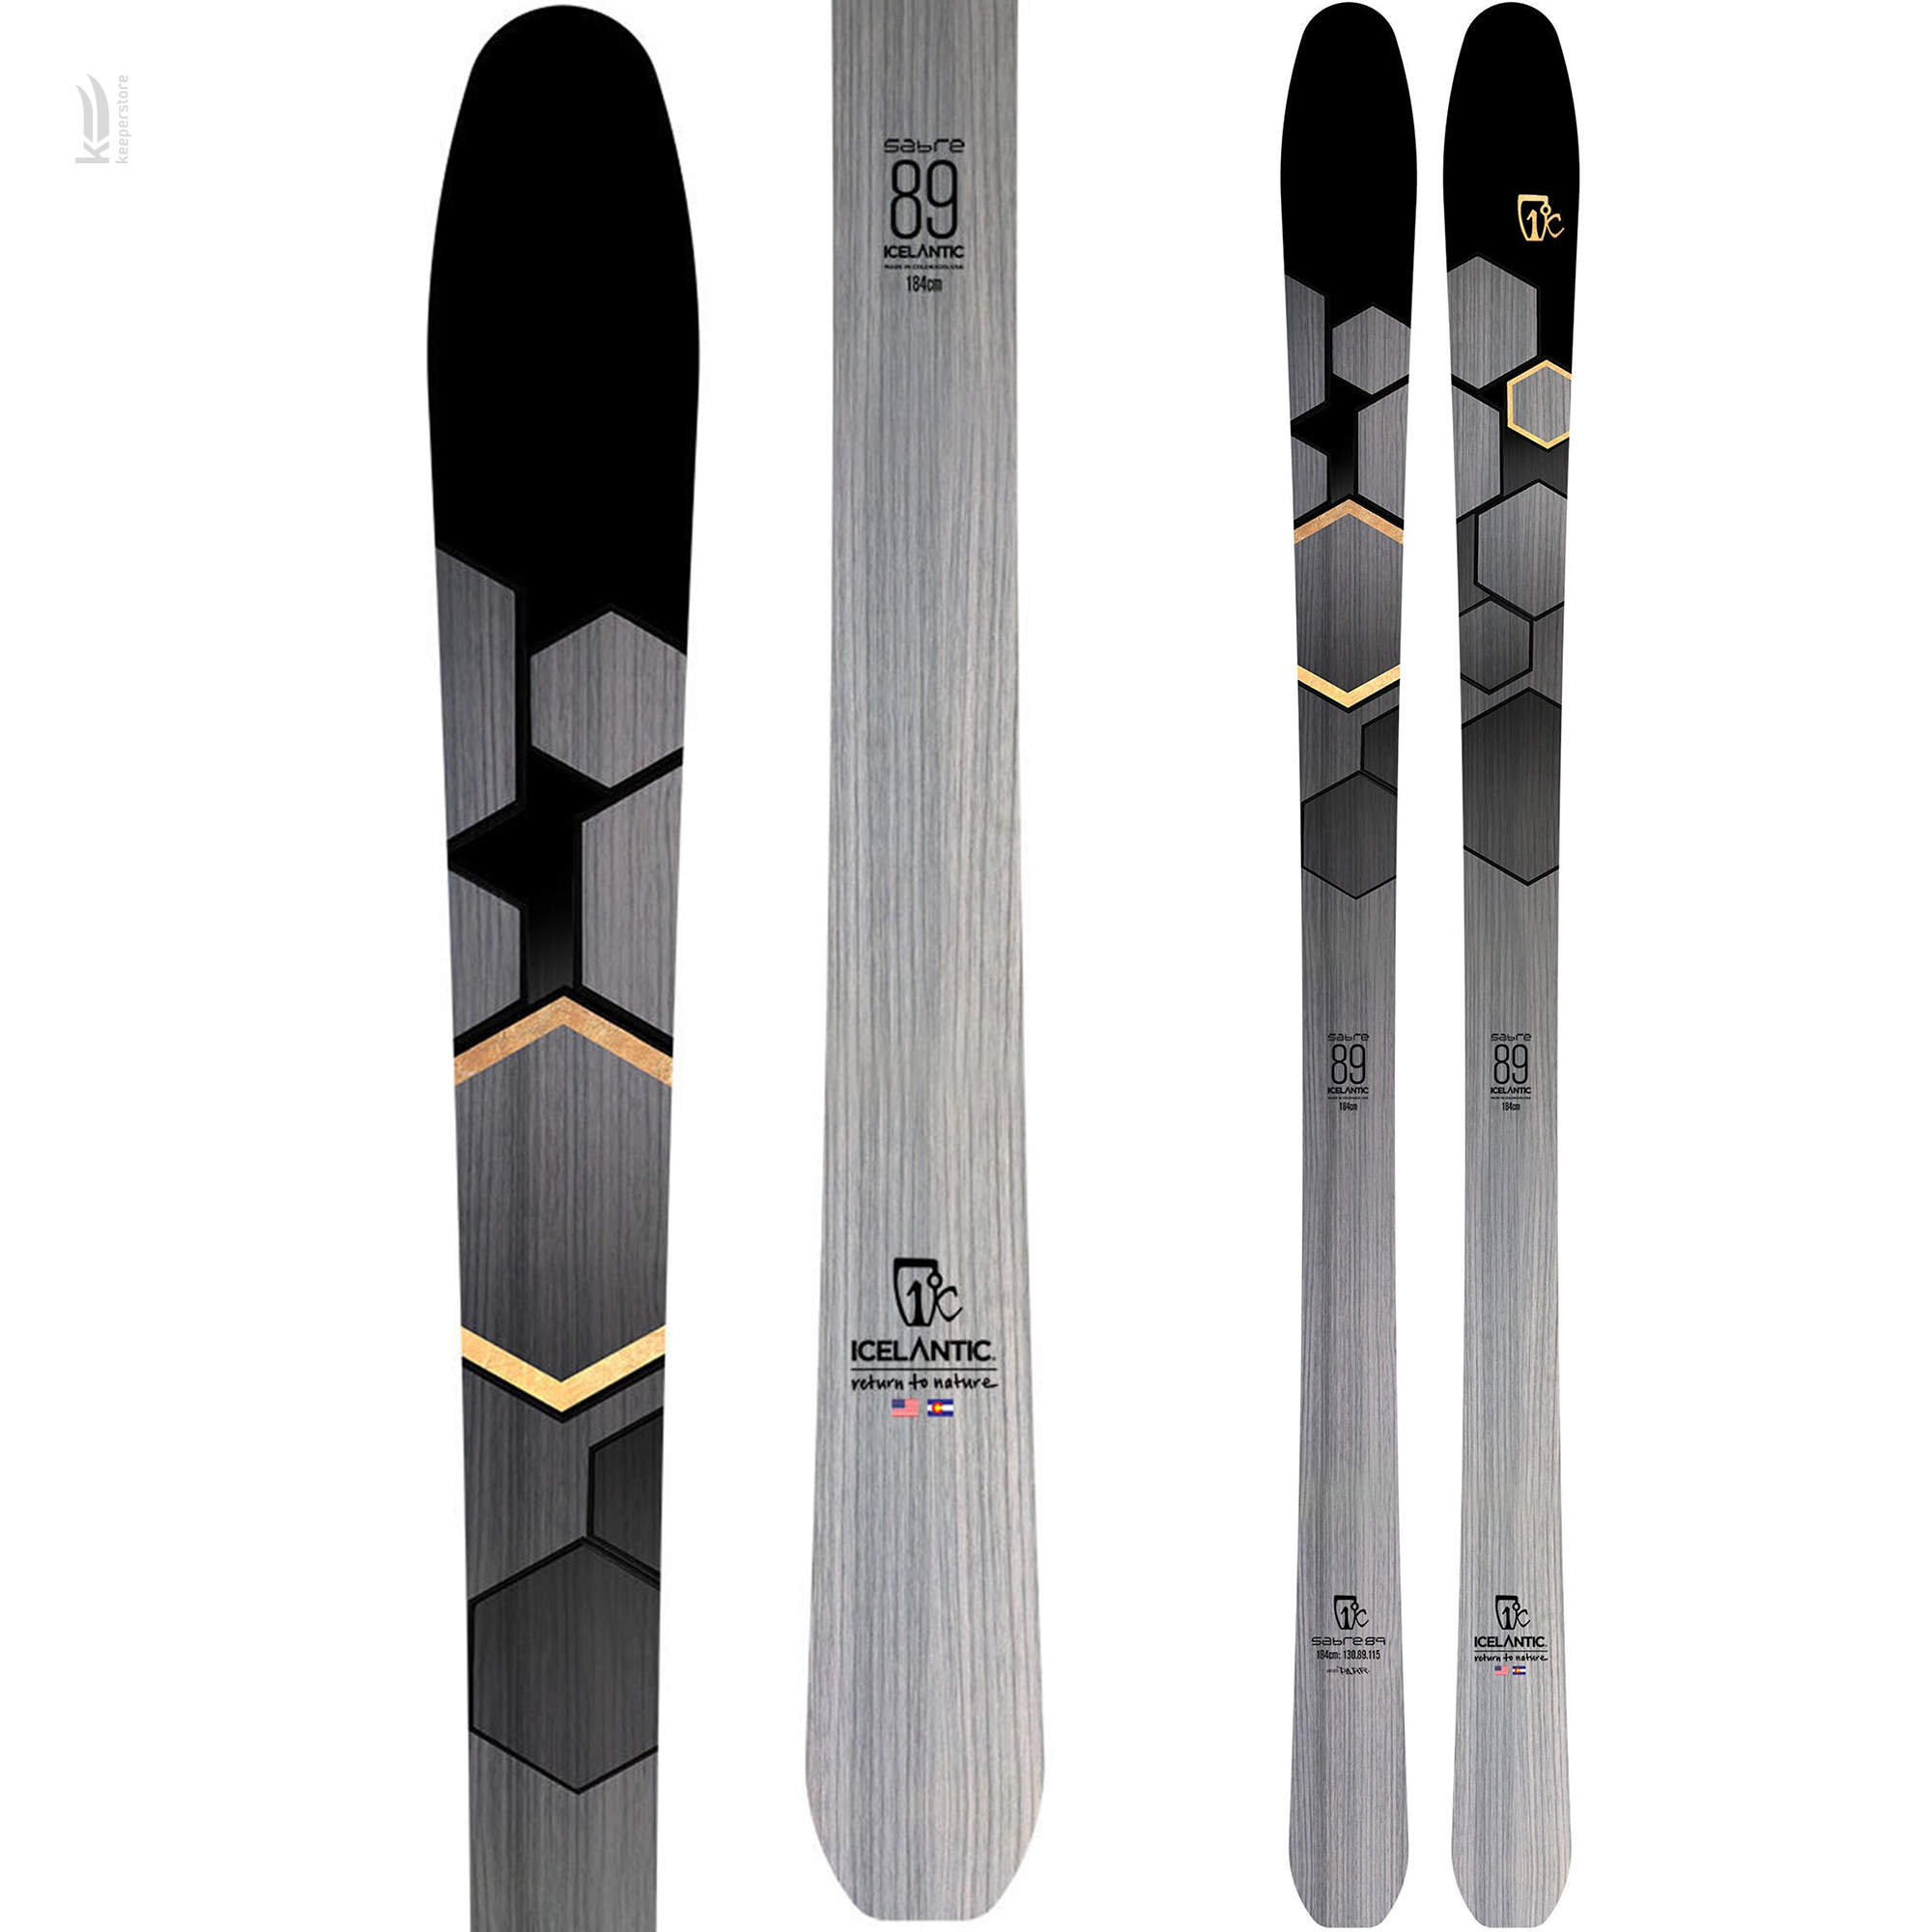 Лыжи для новичков Icelantic Sabre 89 2019/2020 174cm